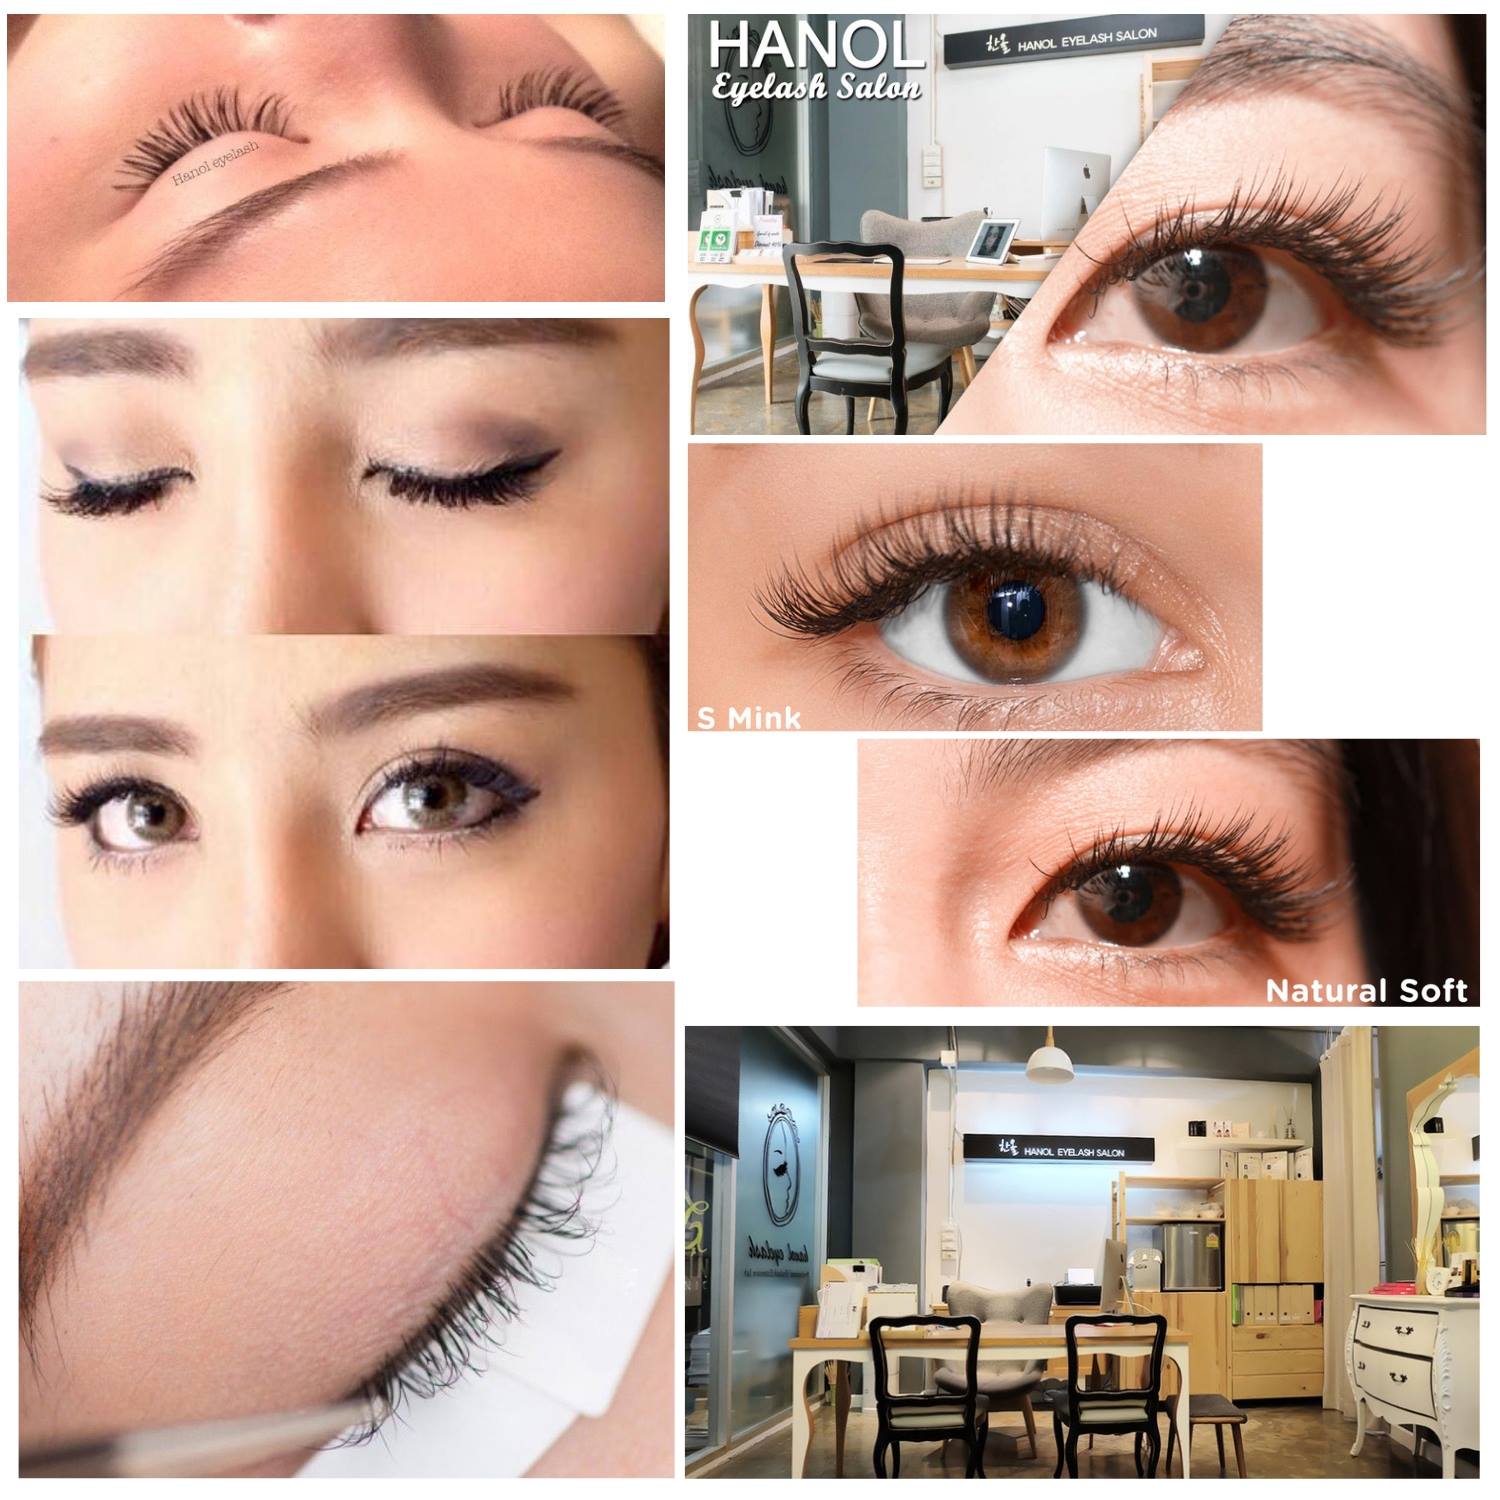 ร้านต่อขนตา 10 ร้านเด็ดในกรุงเทพ - hanol eyelash salon 